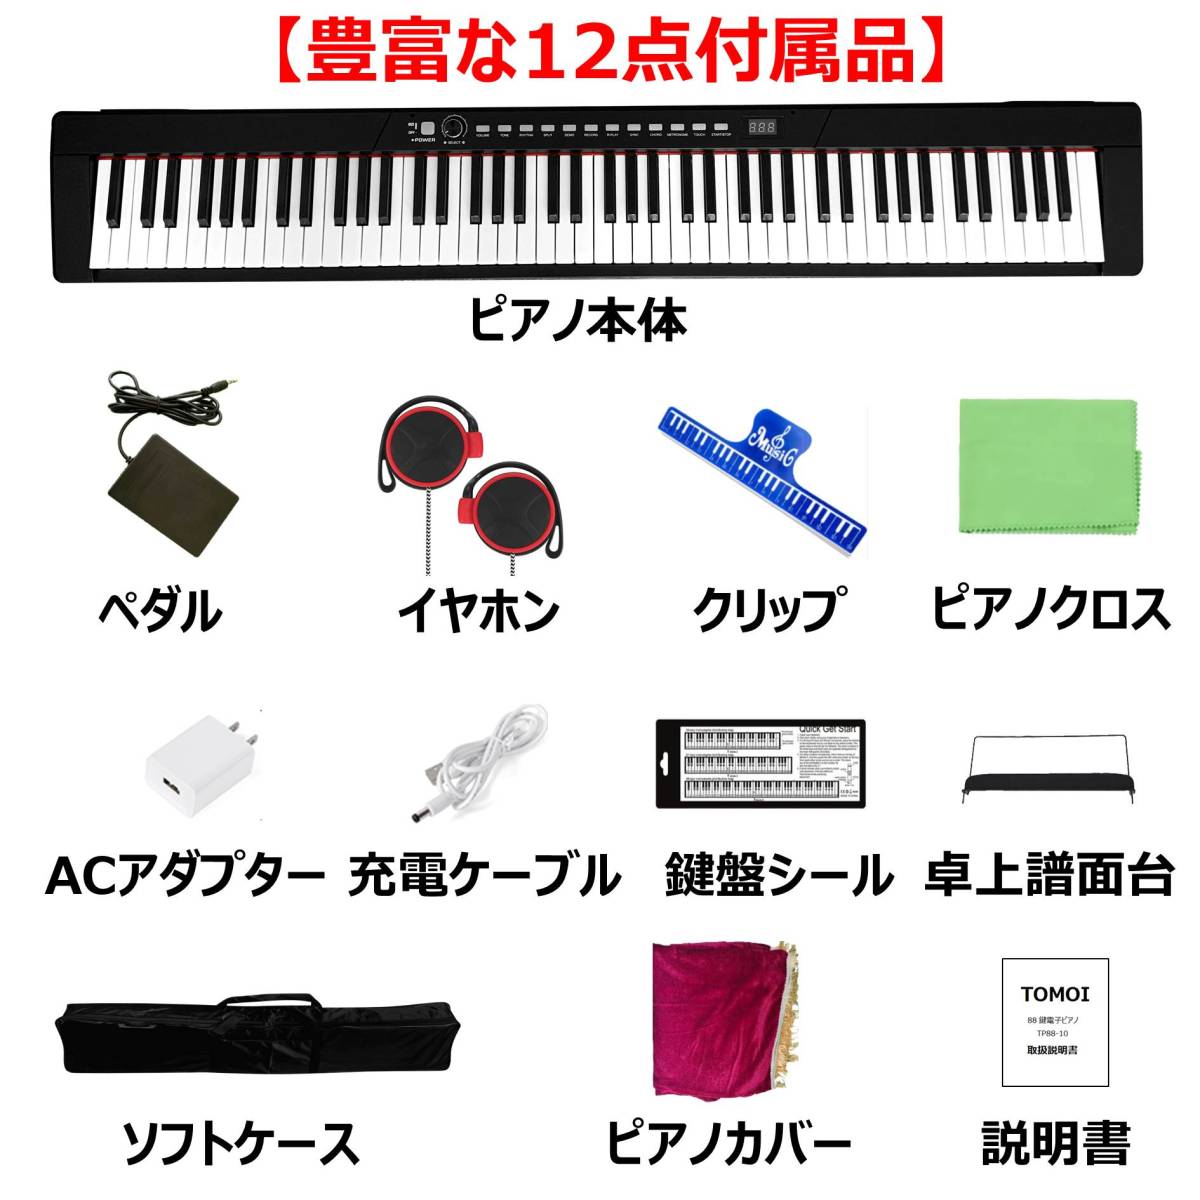 電子ピアノ 88鍵盤 日本語表記 軽量 サスティンペダル 譜面台 イヤホン付属 MIDI ソフトケース ピアノカバー 日本語説明書